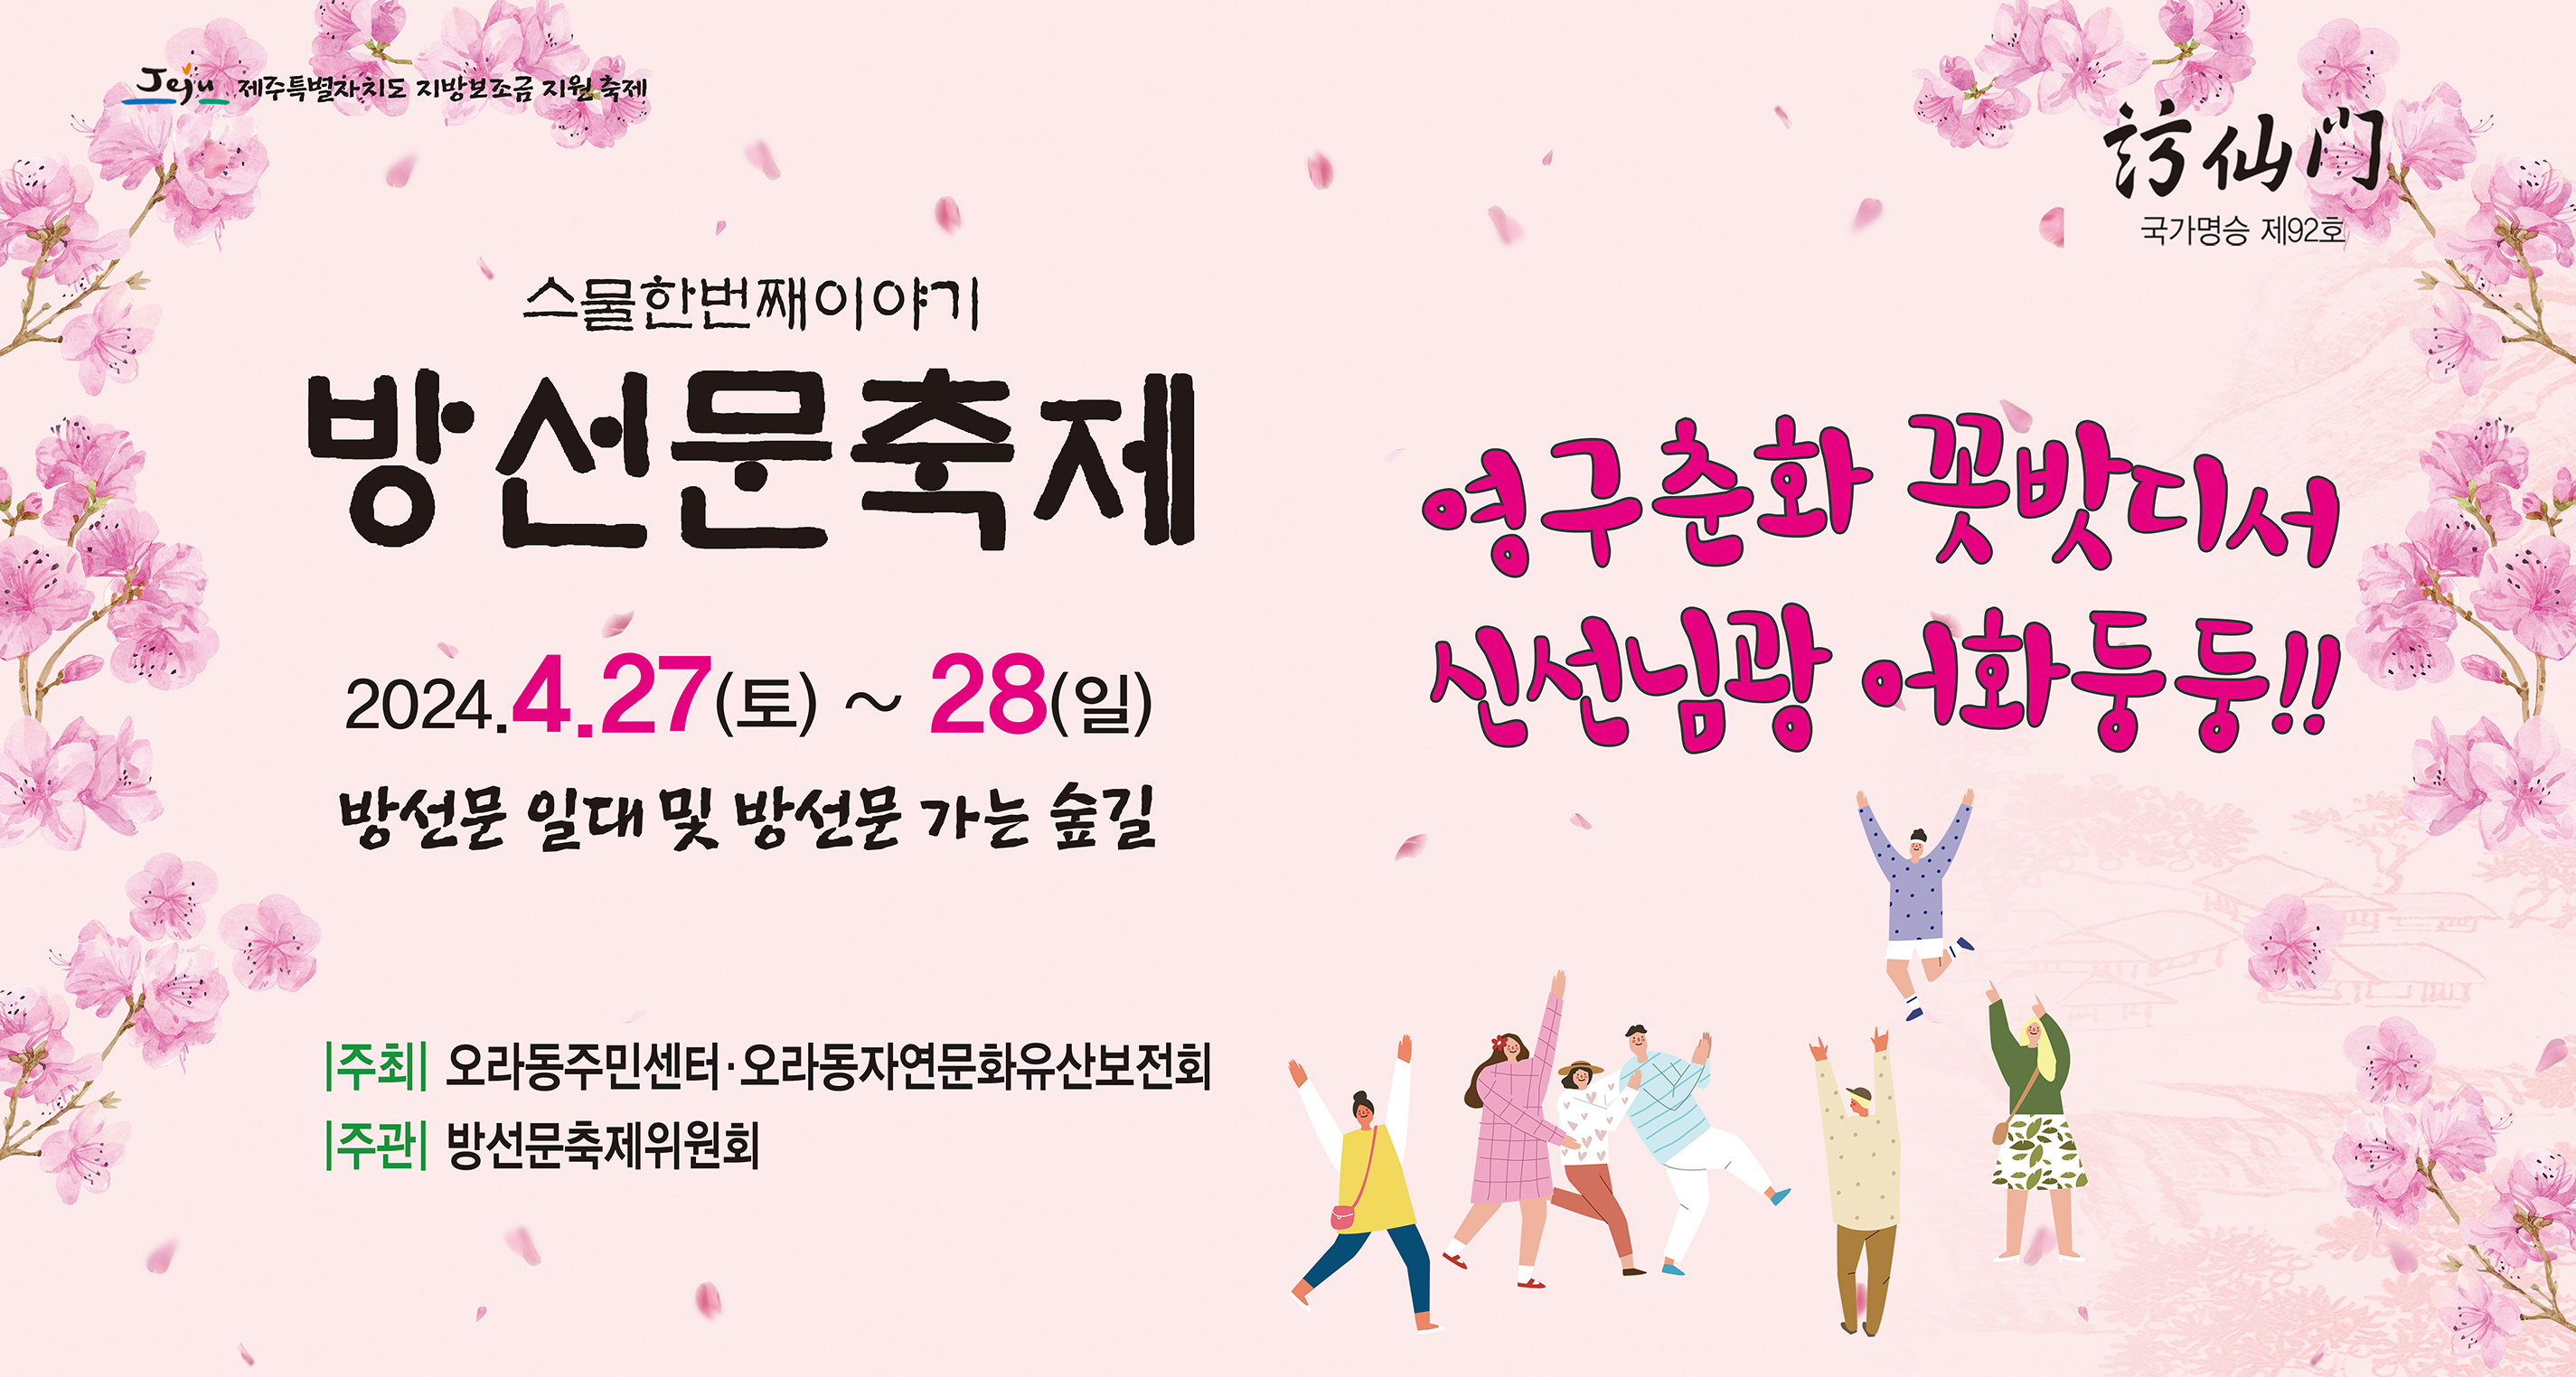 (4.19. 오라동) 오라동, 「제21회 방선문 축제」 개최1.jpg